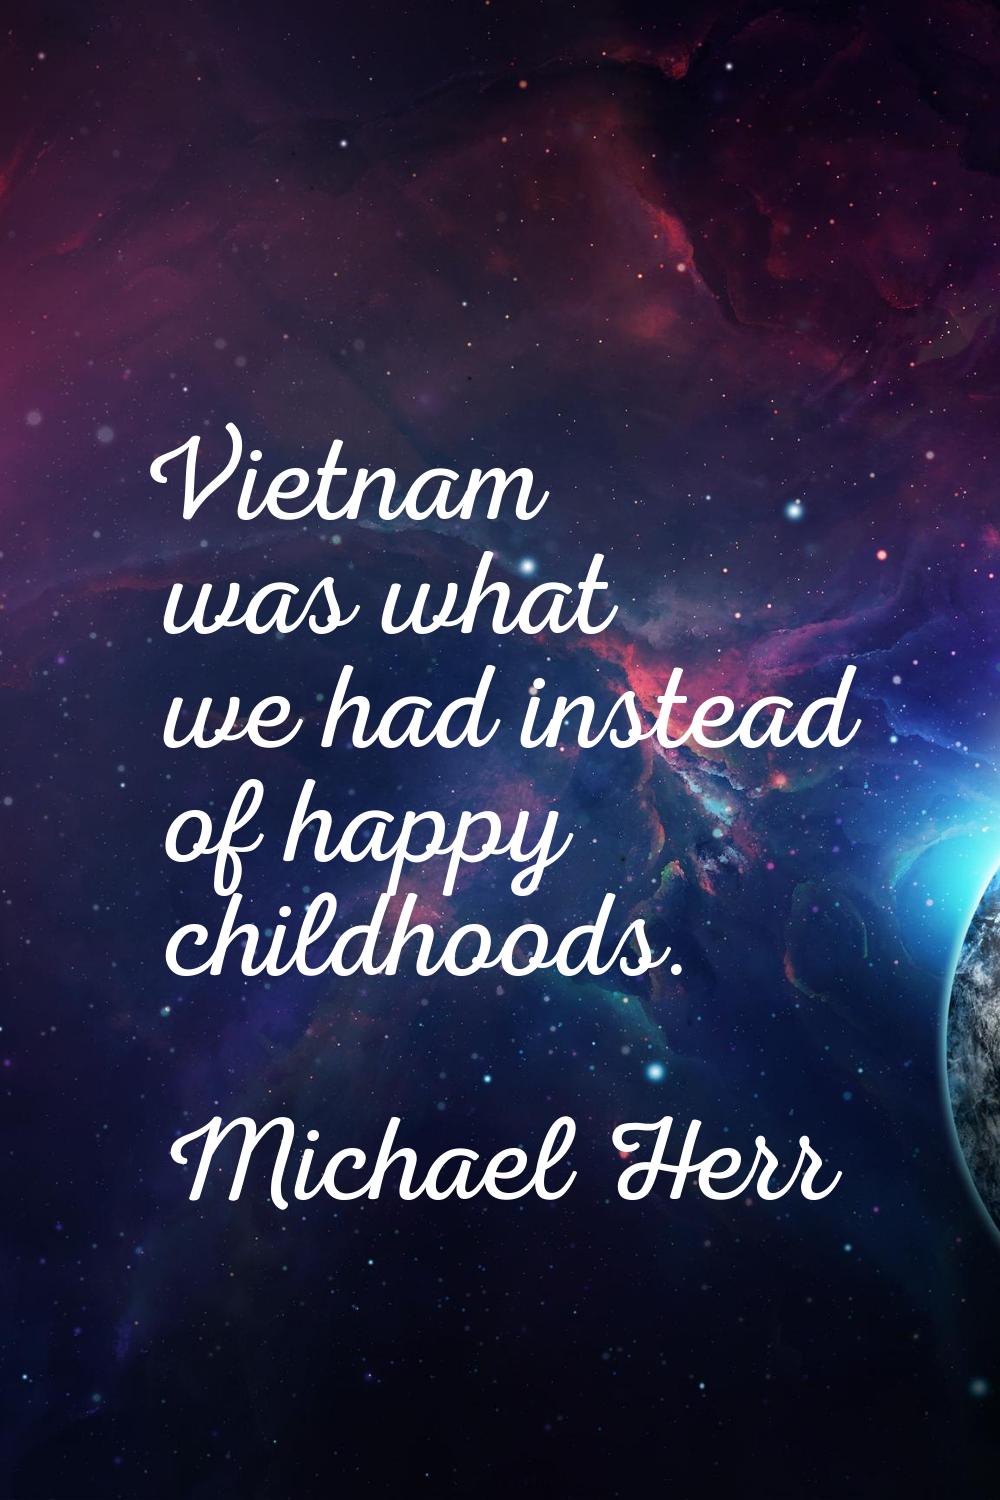 Vietnam was what we had instead of happy childhoods.